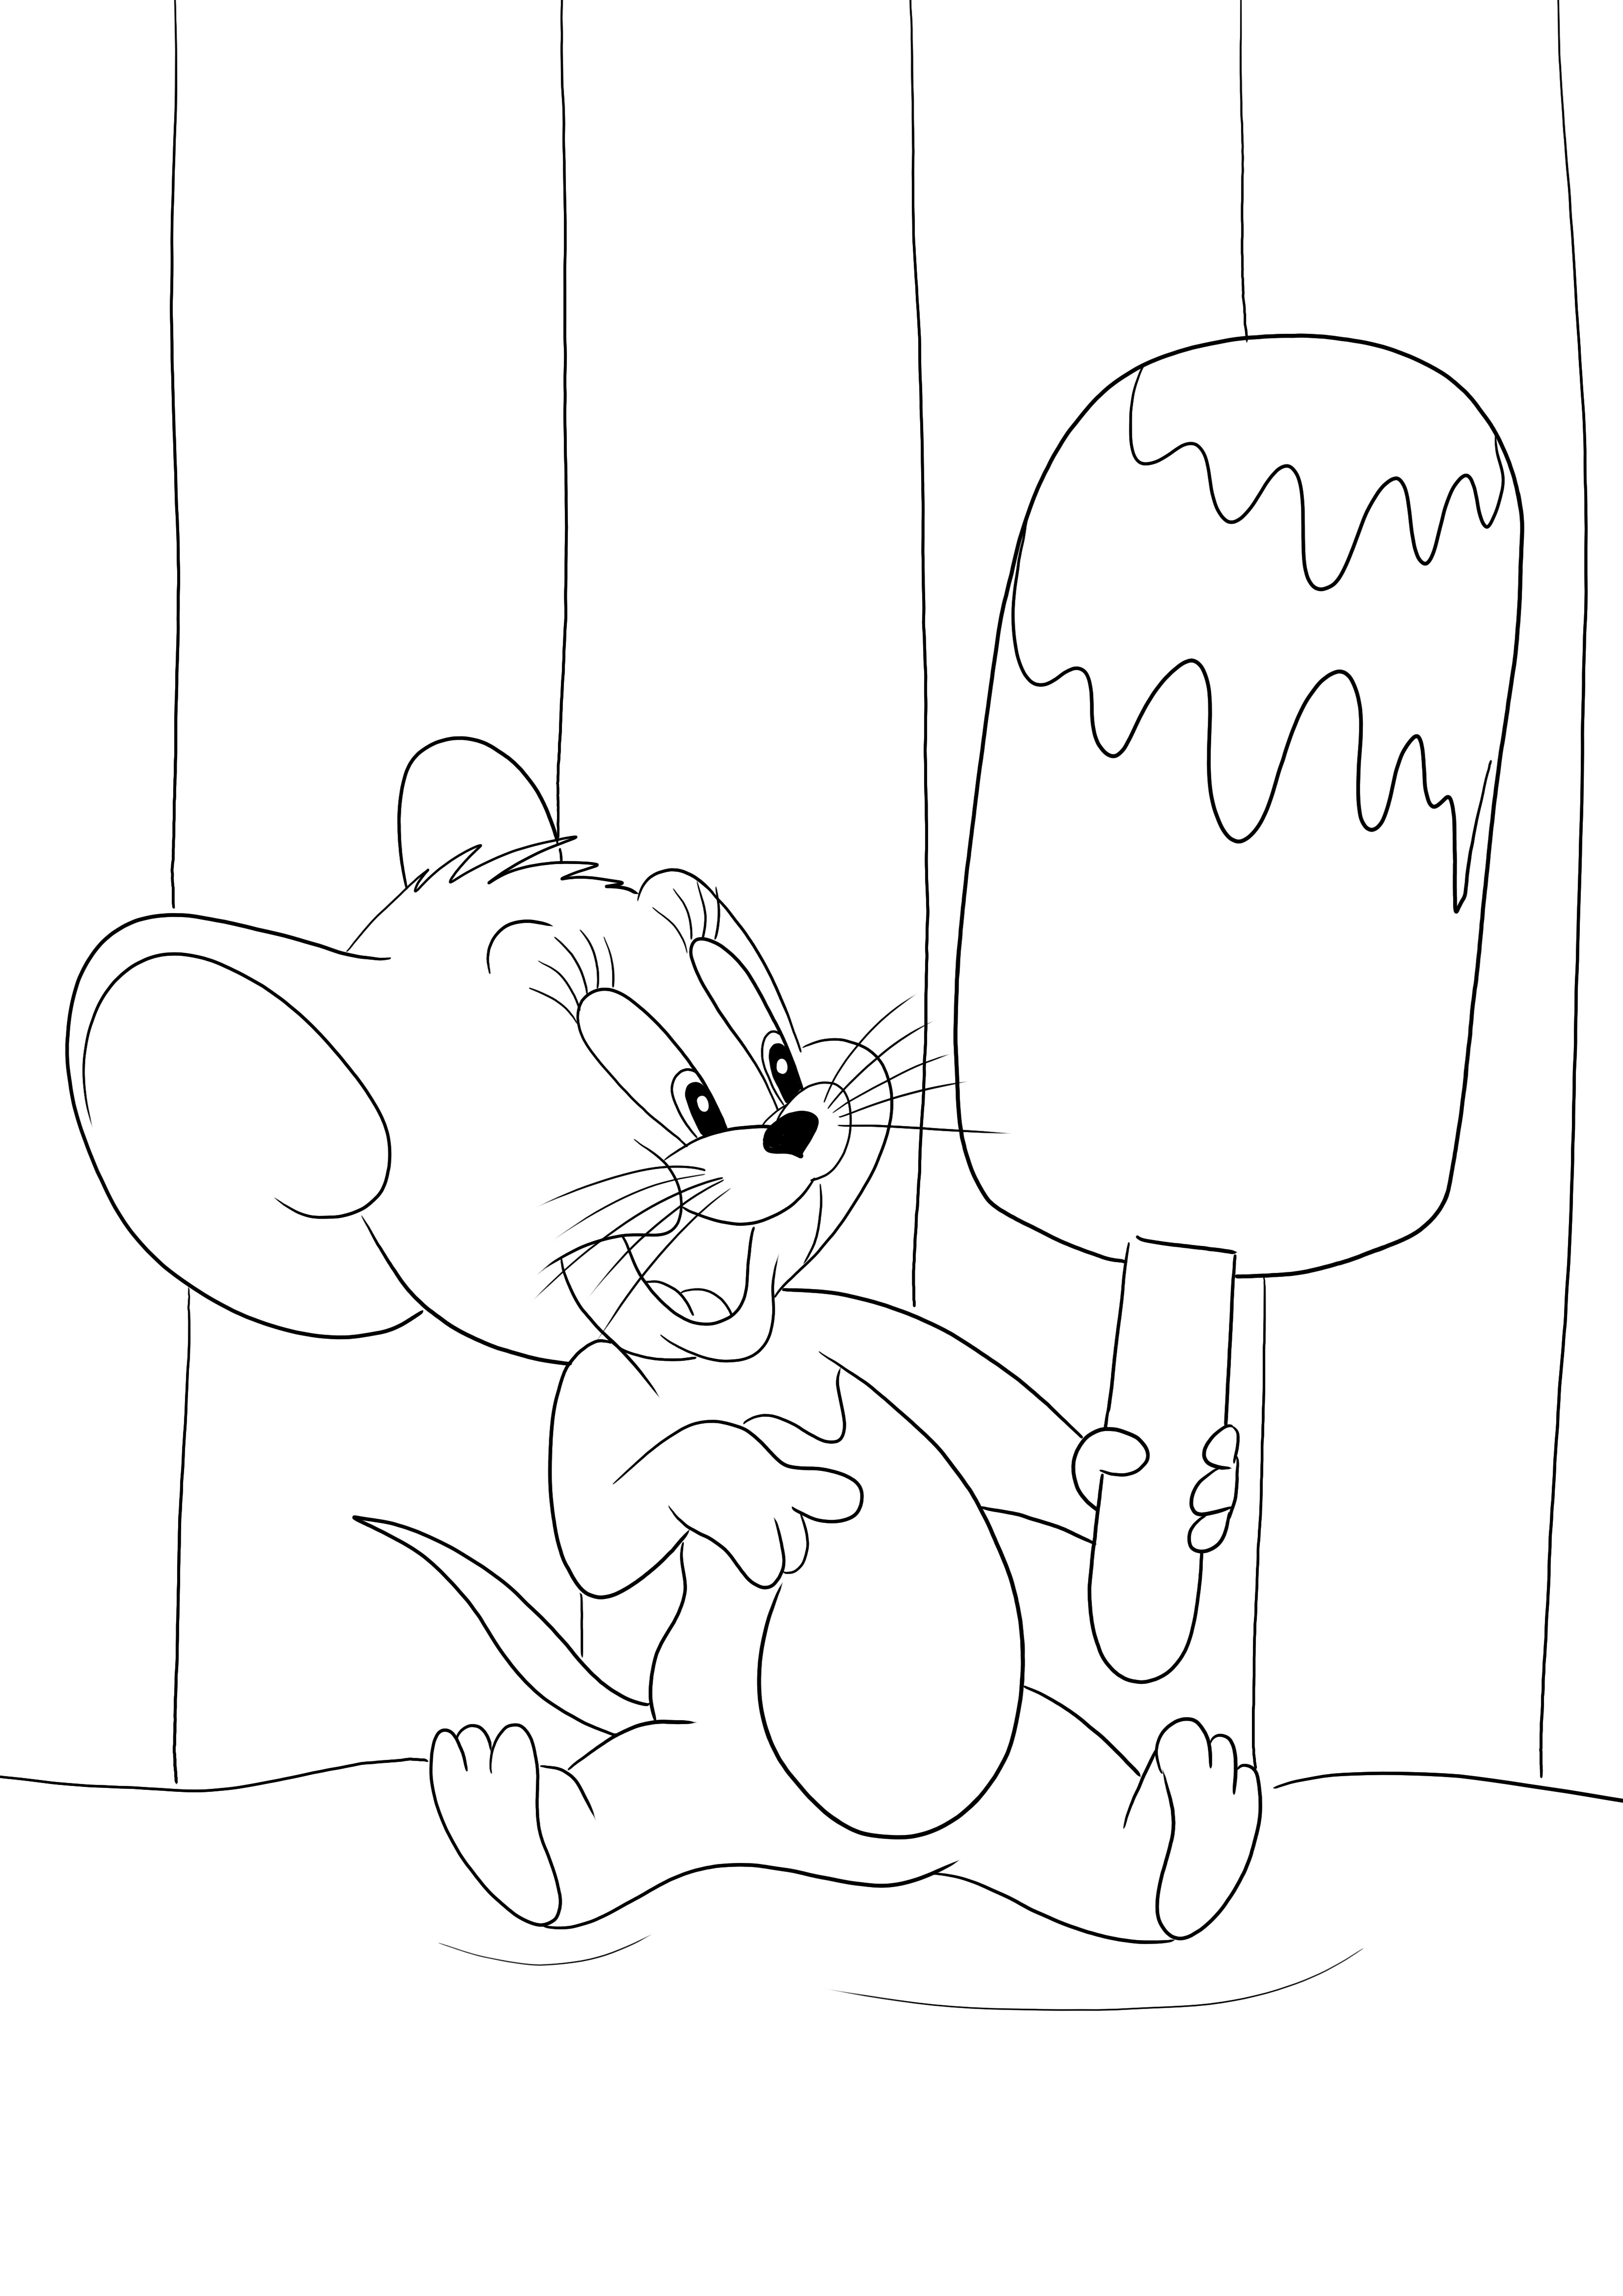 Jerry ve büyük dondurması çocuklar tarafından ücretsiz olarak basılmaya ve renklendirilmeye hazır